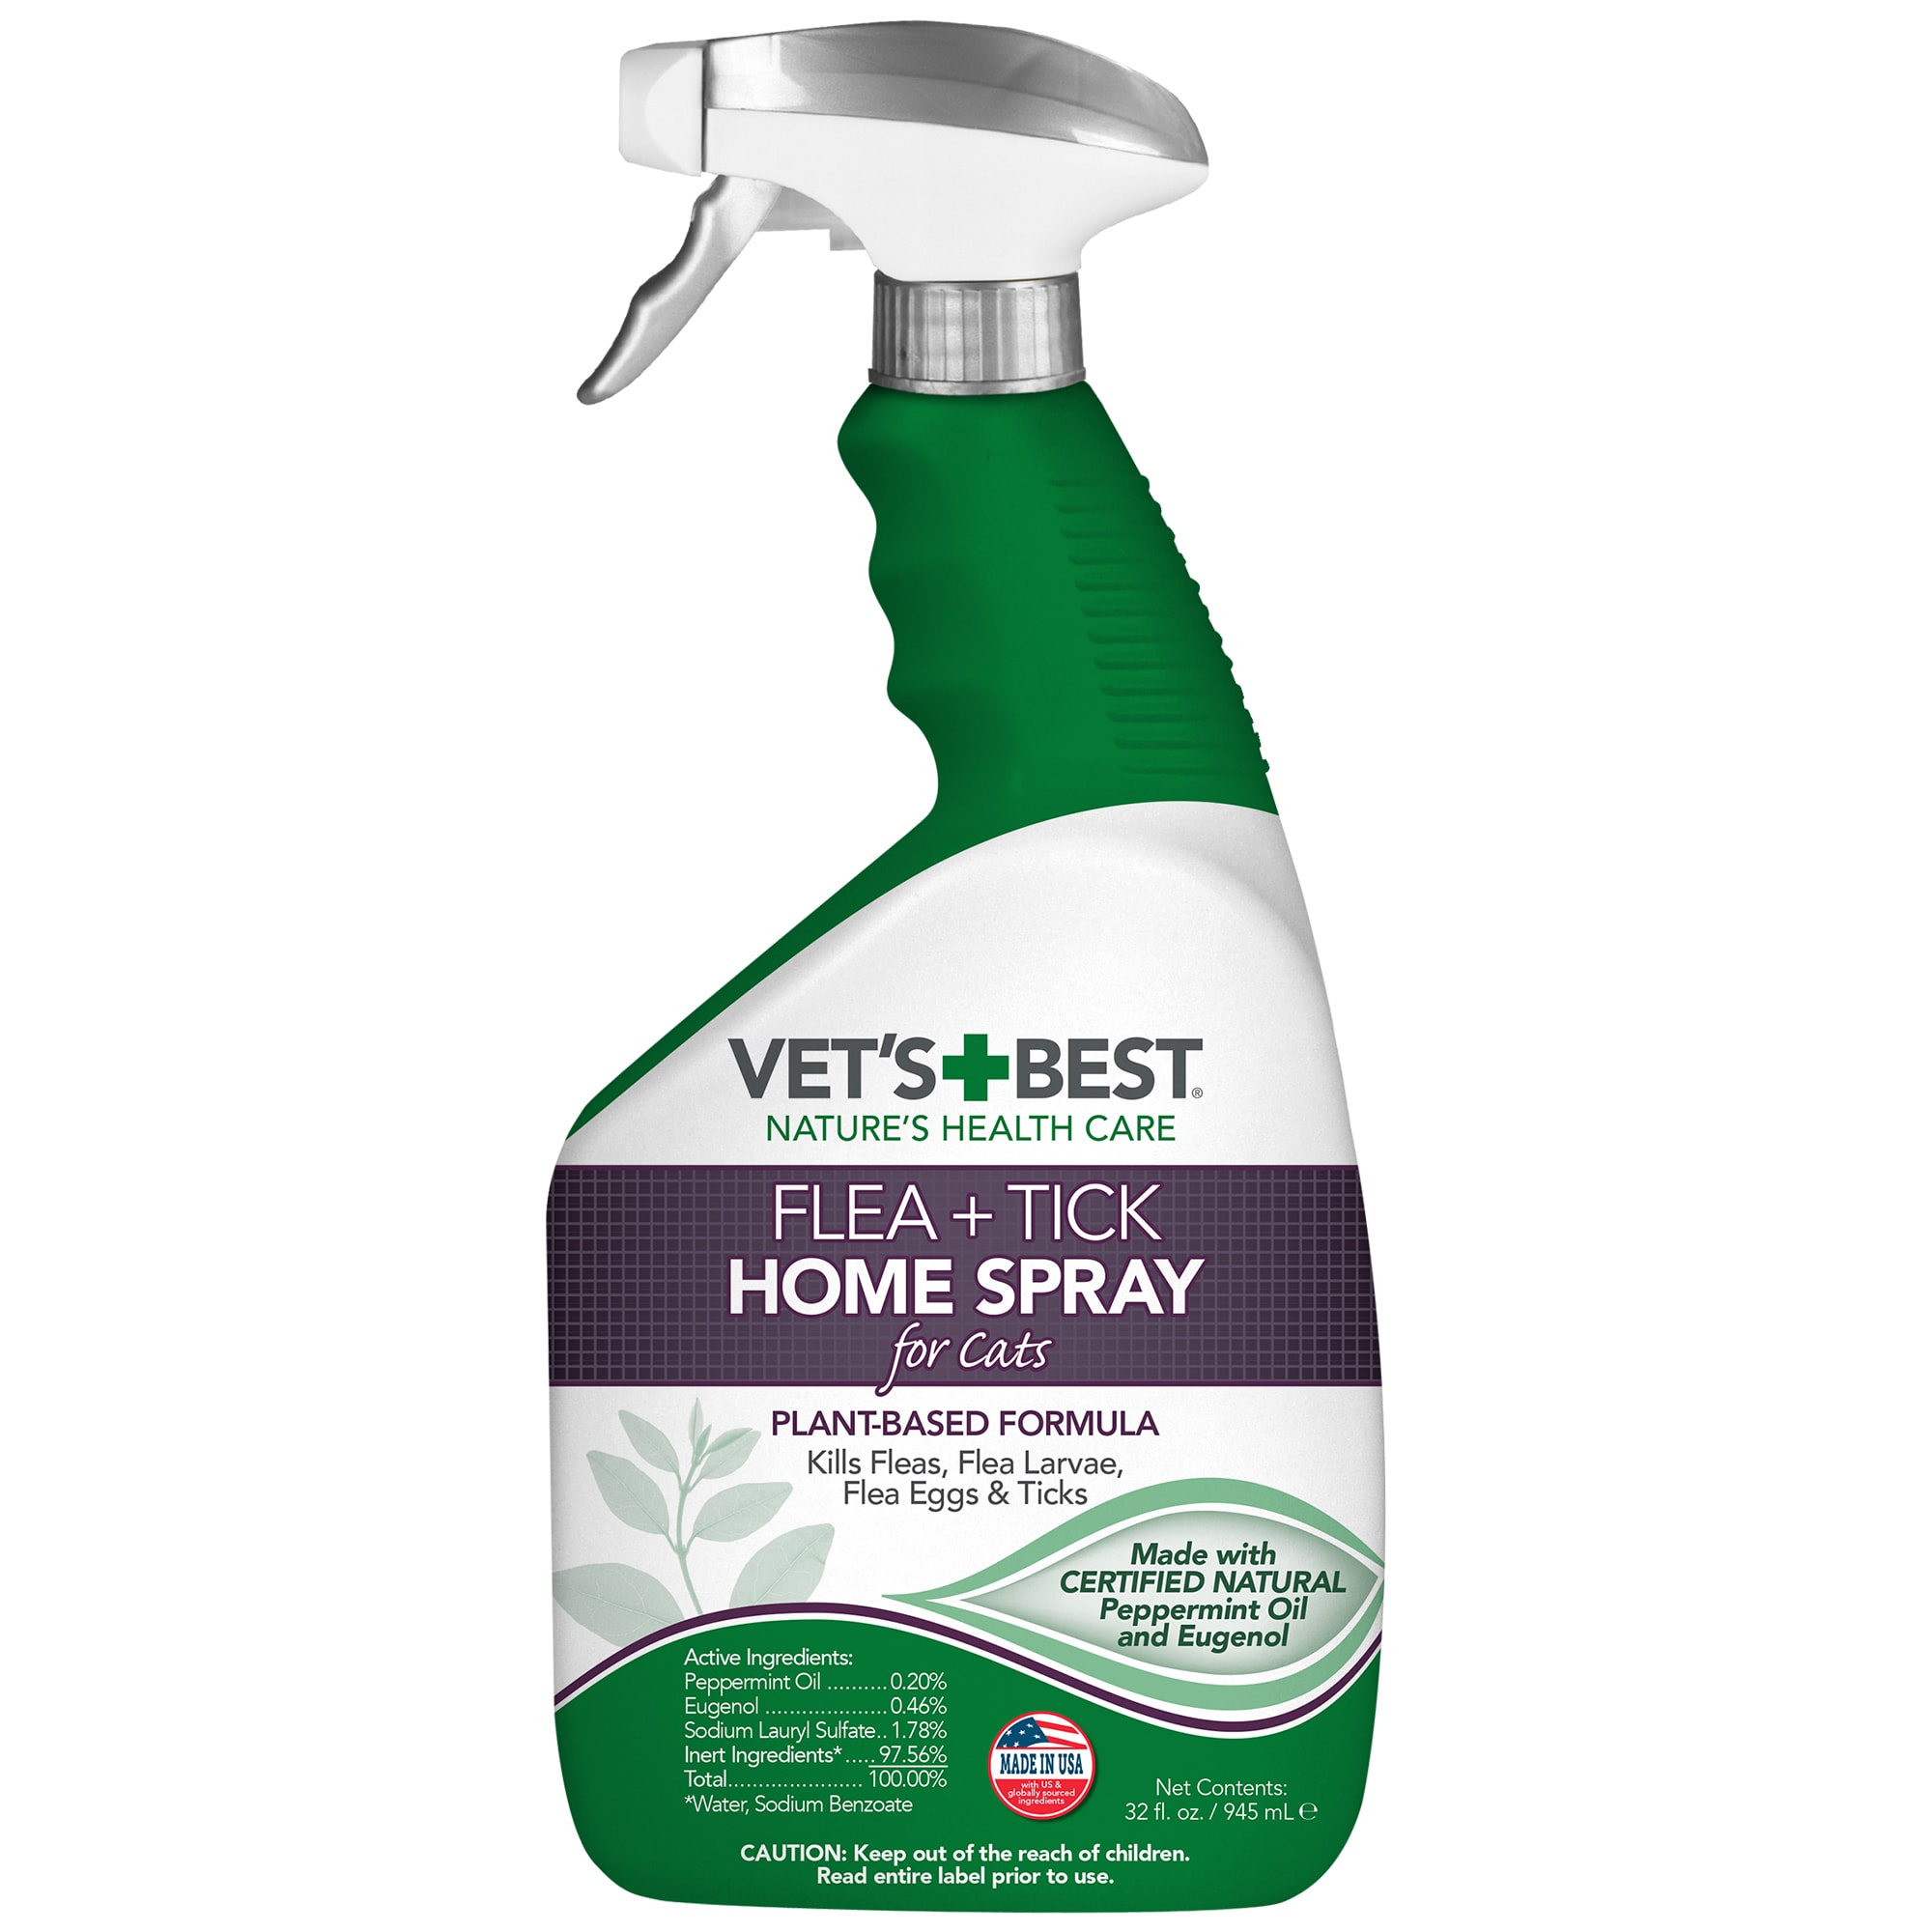 flea spray for home